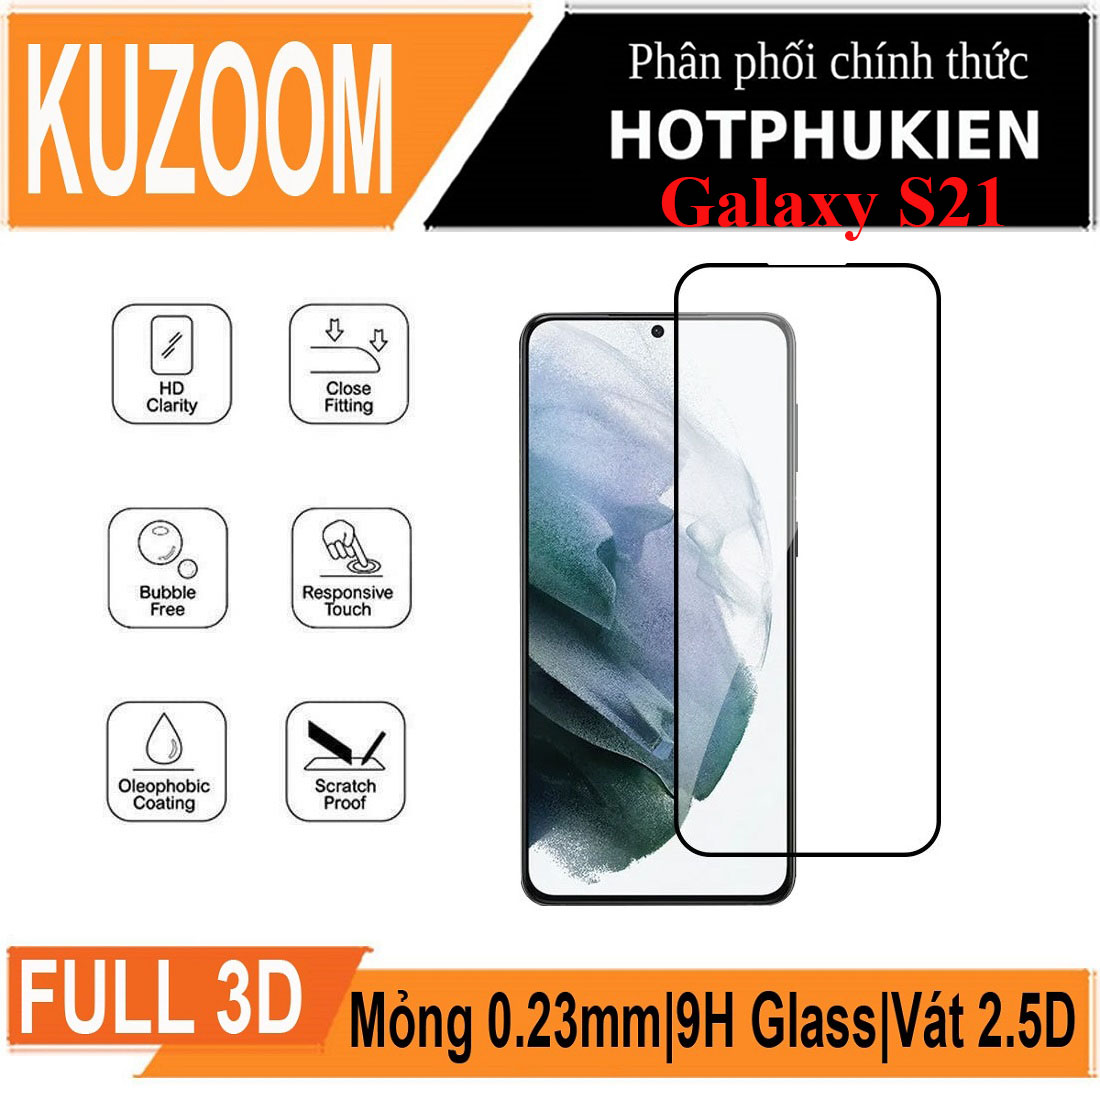 Miếng dán kính cường lực 3D cho Samsung Galaxy S21 hiệu Kuzoom Protective Glass - mỏng 0.3mm, vát cạnh 2.5D, độ cứng 9H, viền cứng mỏng